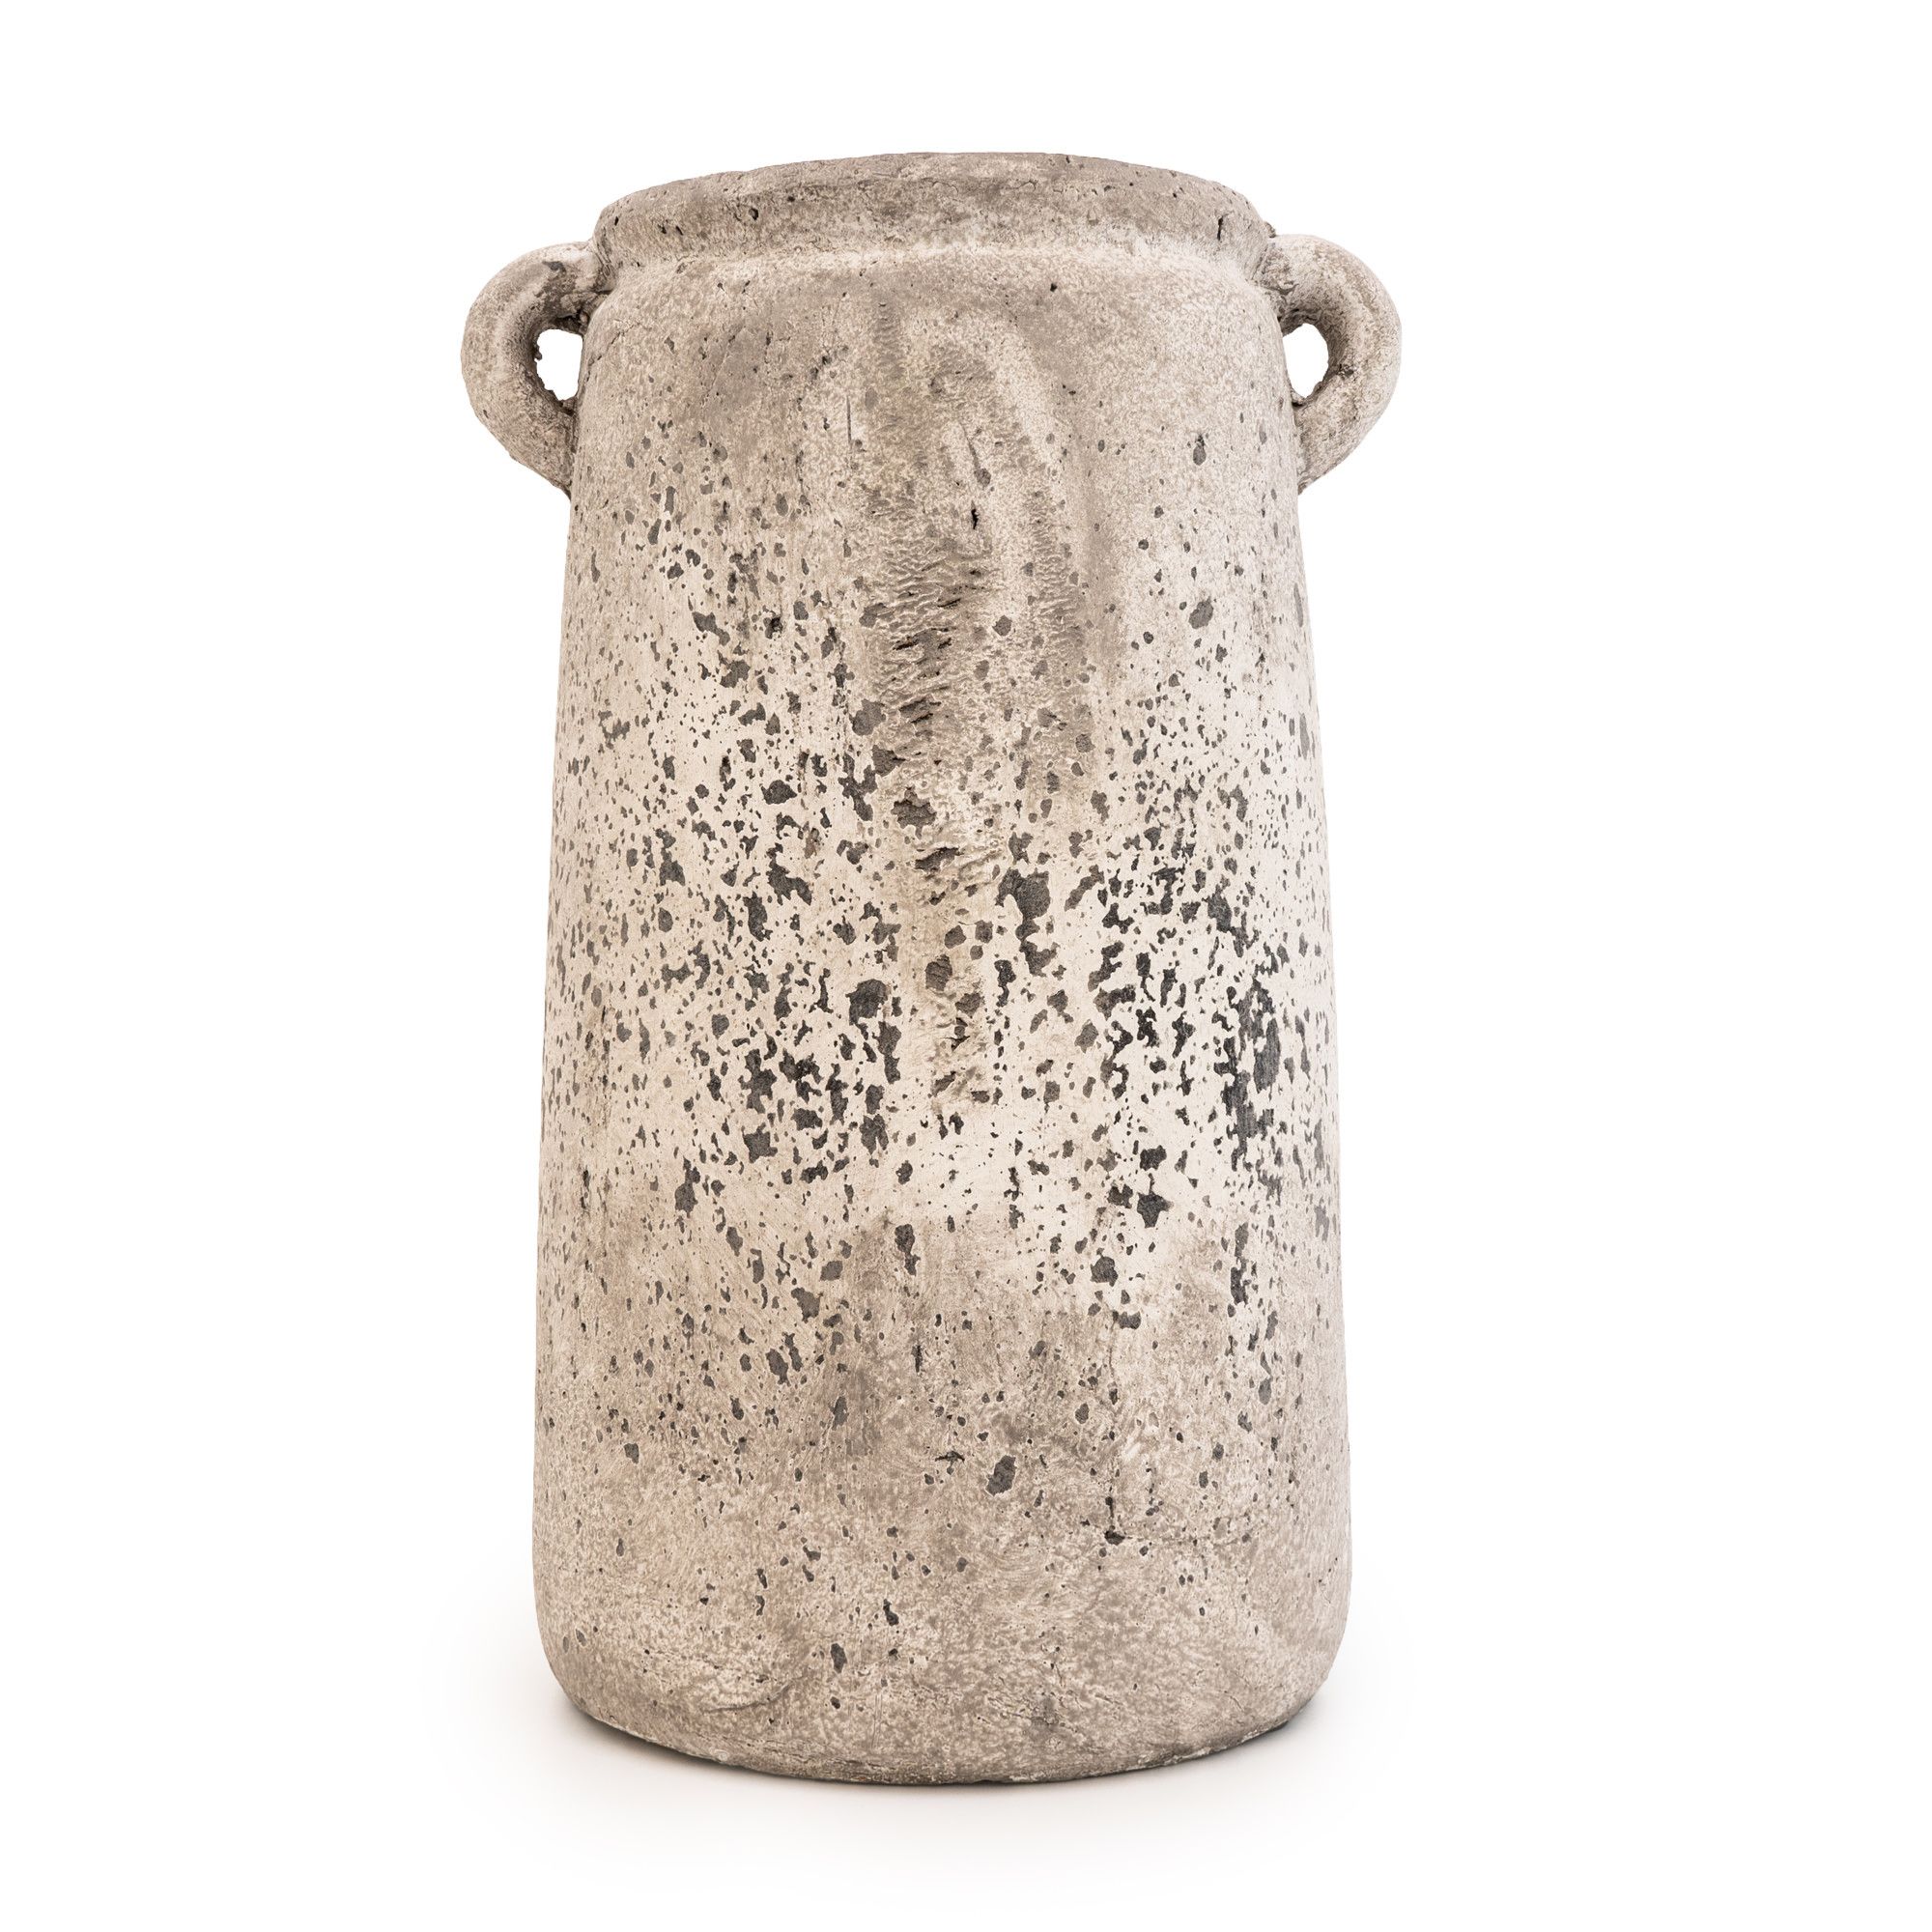 Concrete Vase, 33.5cm